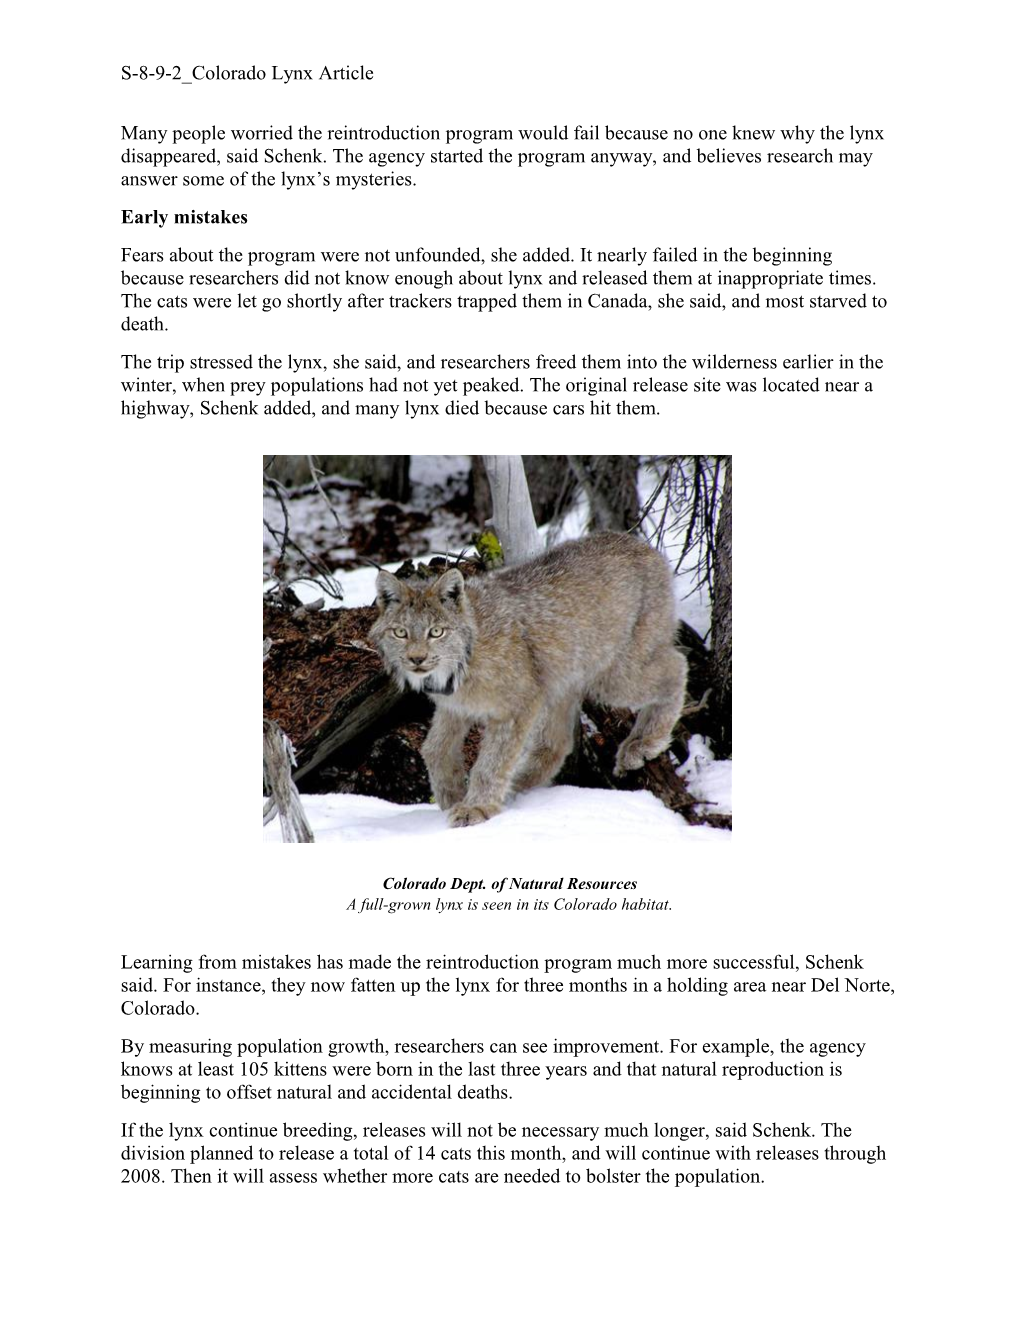 Elusive Lynx Make Comeback in Colorado